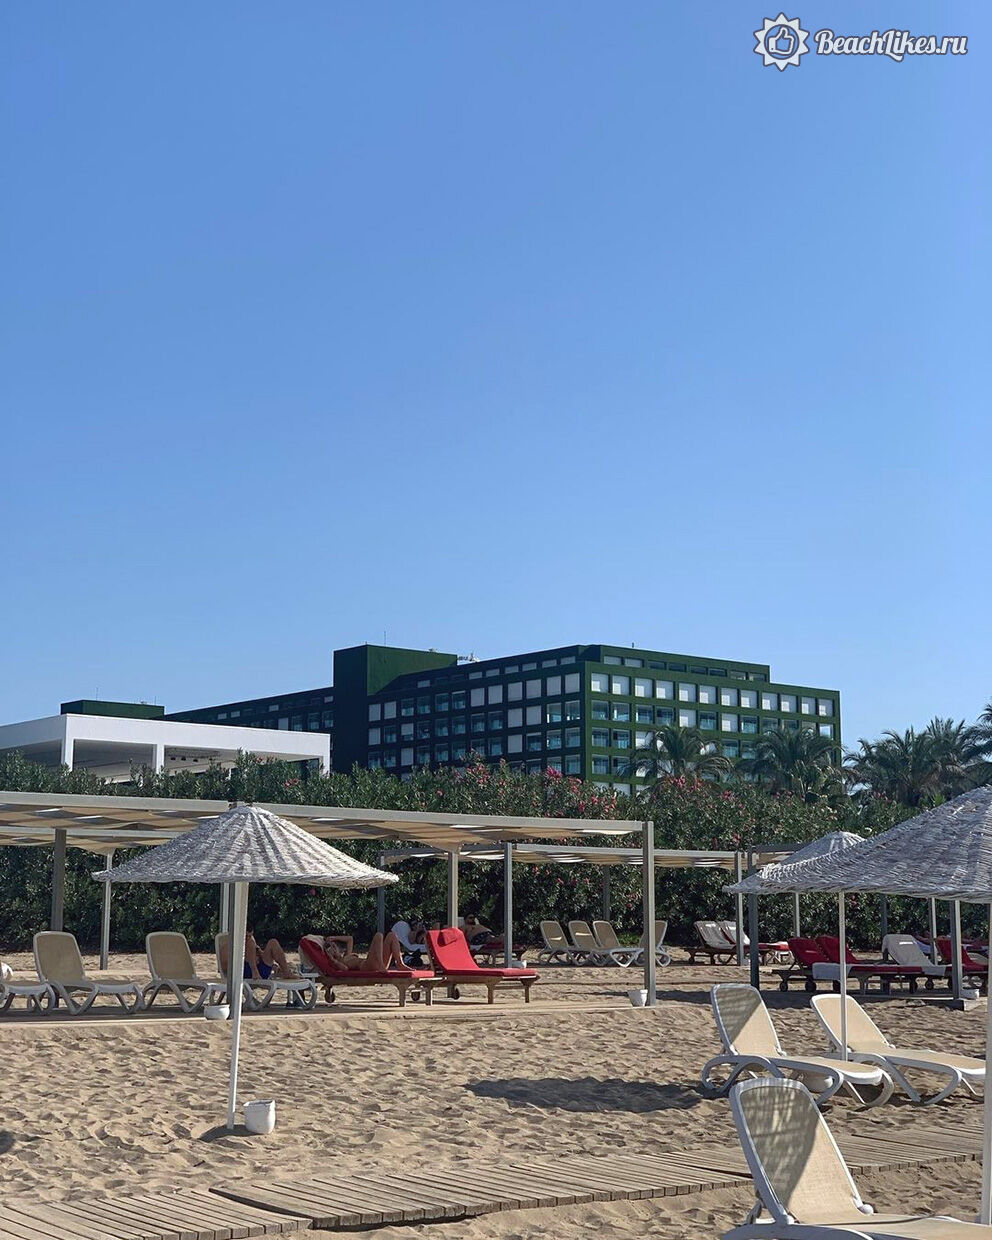 Песчаный пляж в Турции в отеле 5 звезд